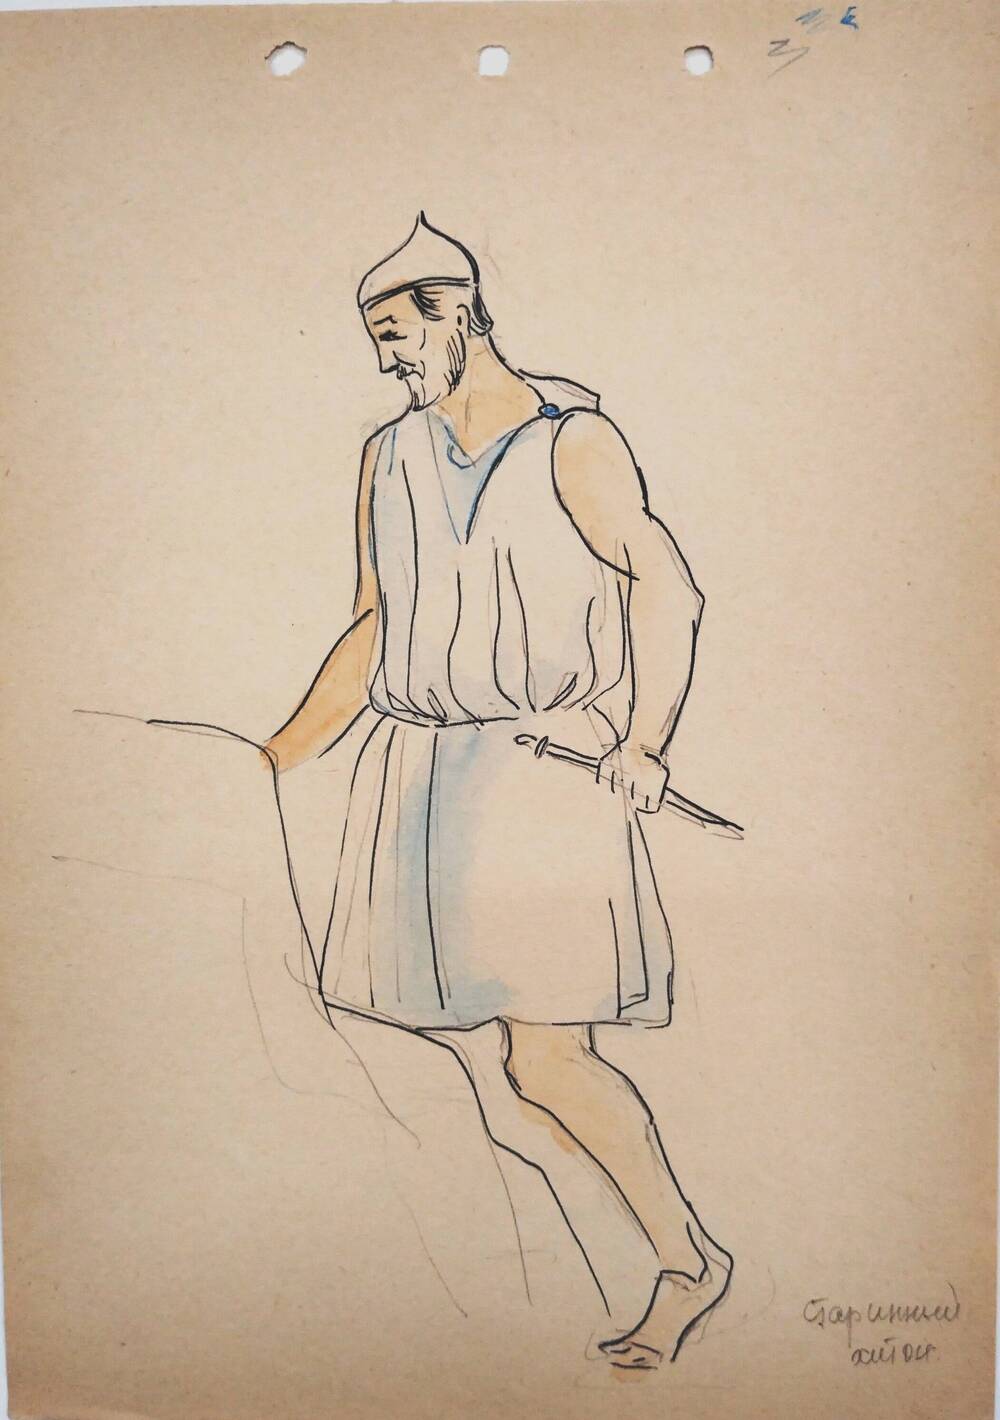 Чернышова Г.А.  Эскиз мужского античного костюма (шапочка кюне, хитон, в руке кинжал).